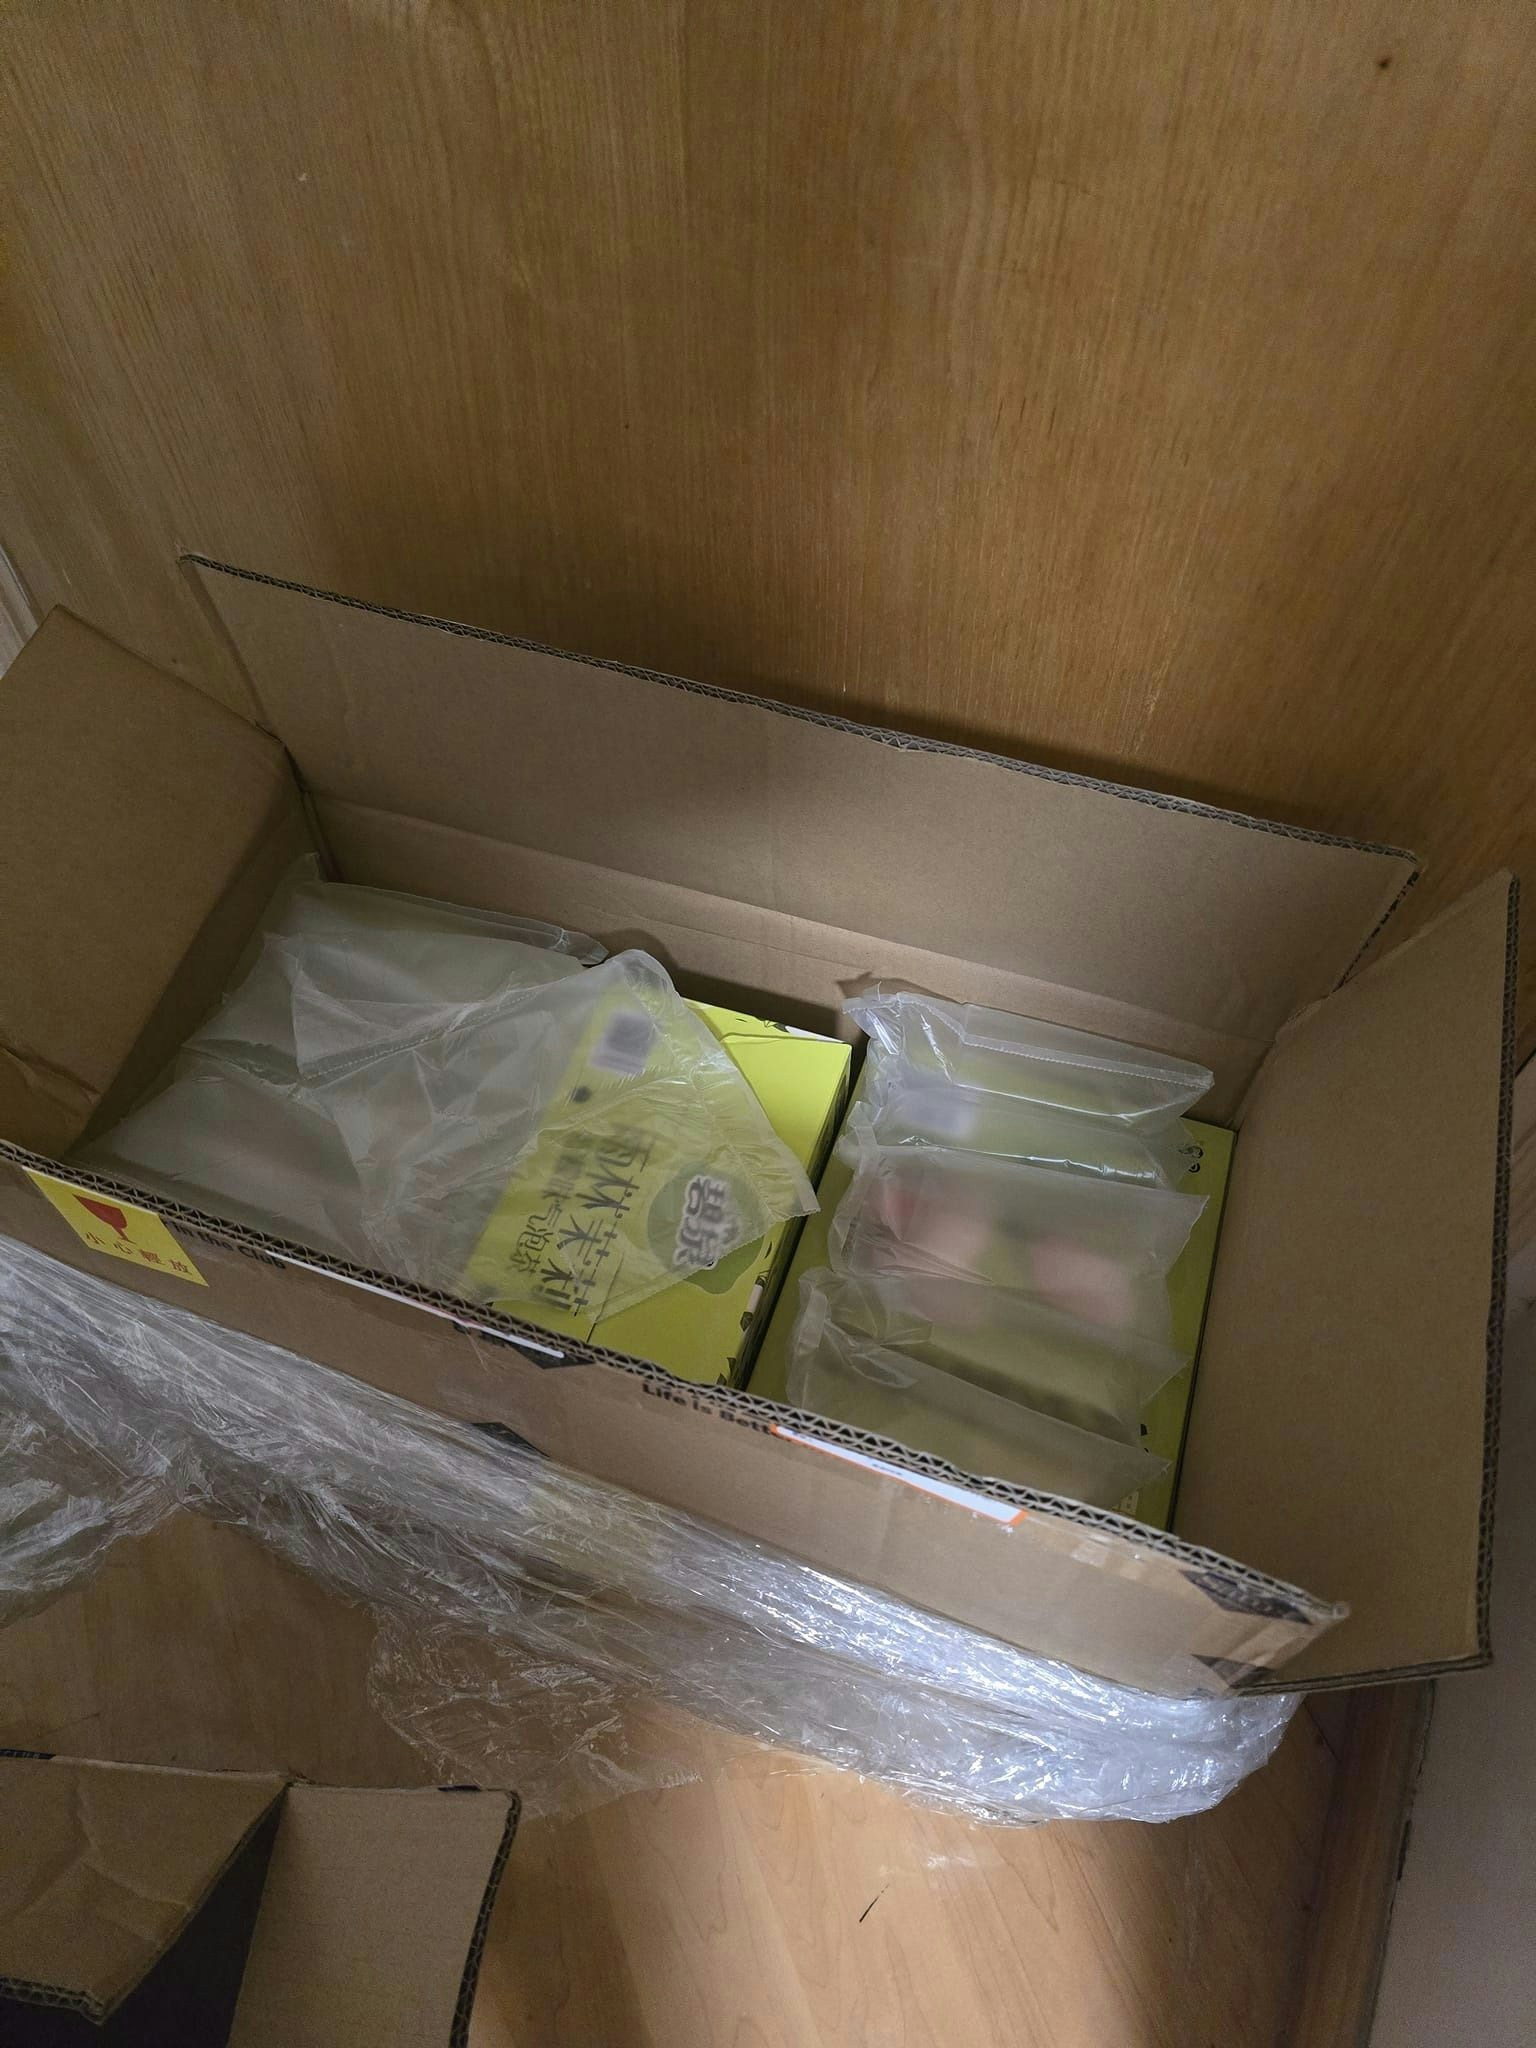 有男网民分享「战利品」，他买了两大箱货品，主要是食品和茶饮，运送纸箱和包装尚算「企理」完整。（Facebook群组「山姆会员商店一香港人群组」）